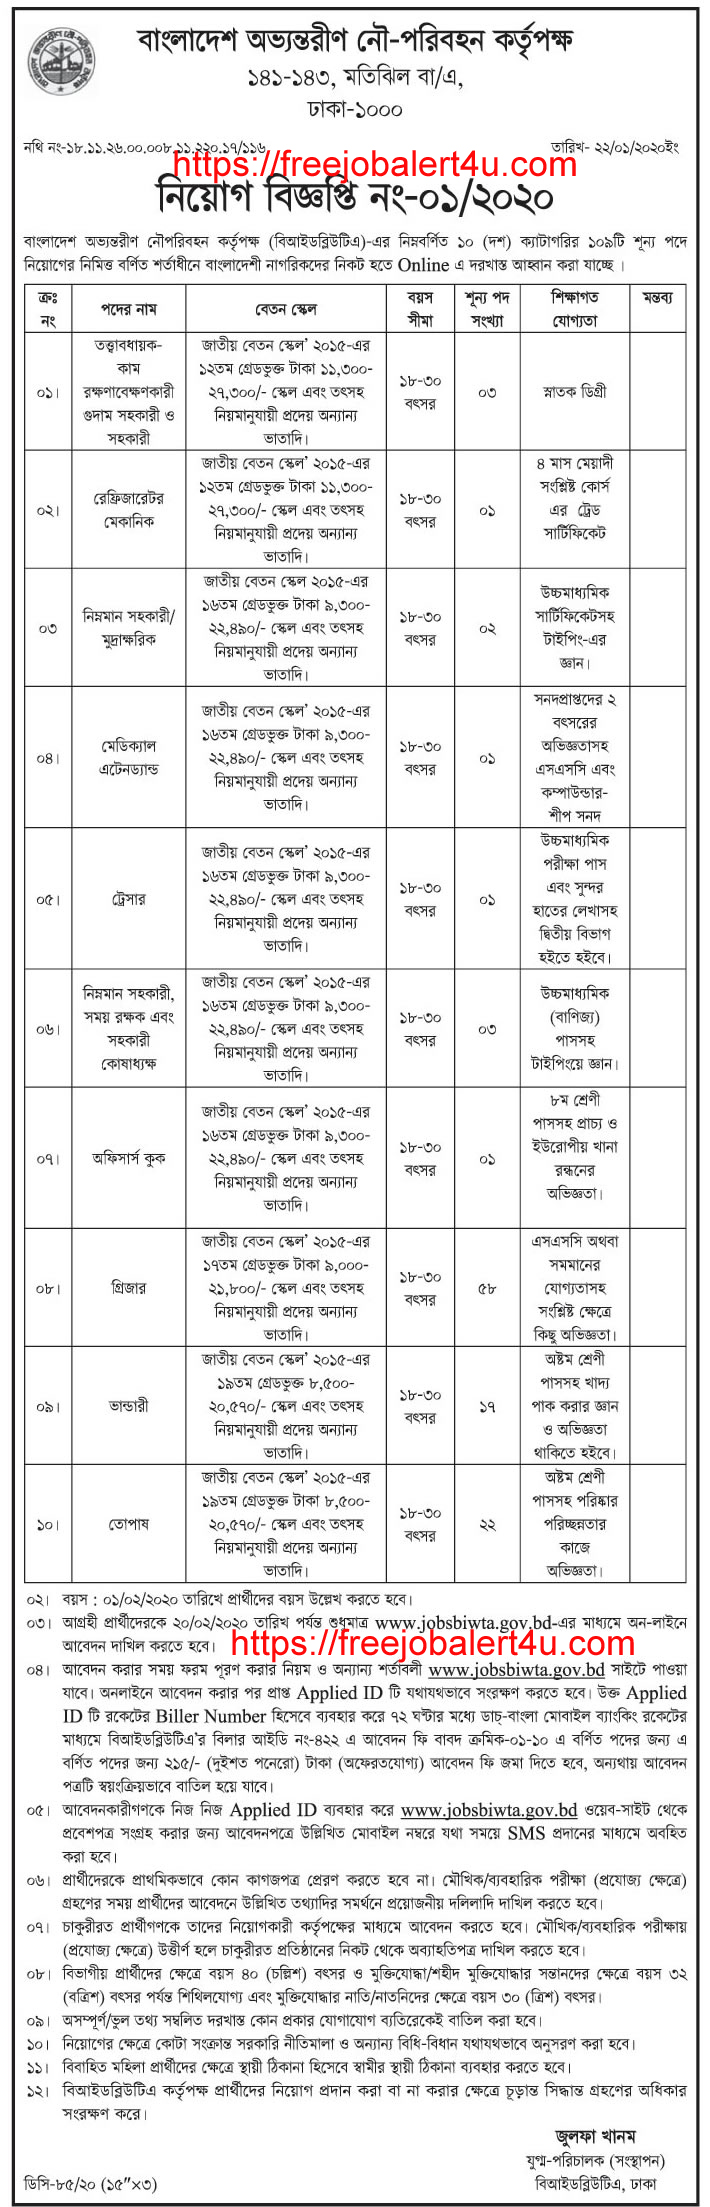 Bangladesh Inland Water Transport Authority (BIWTA) Job Circular 2020